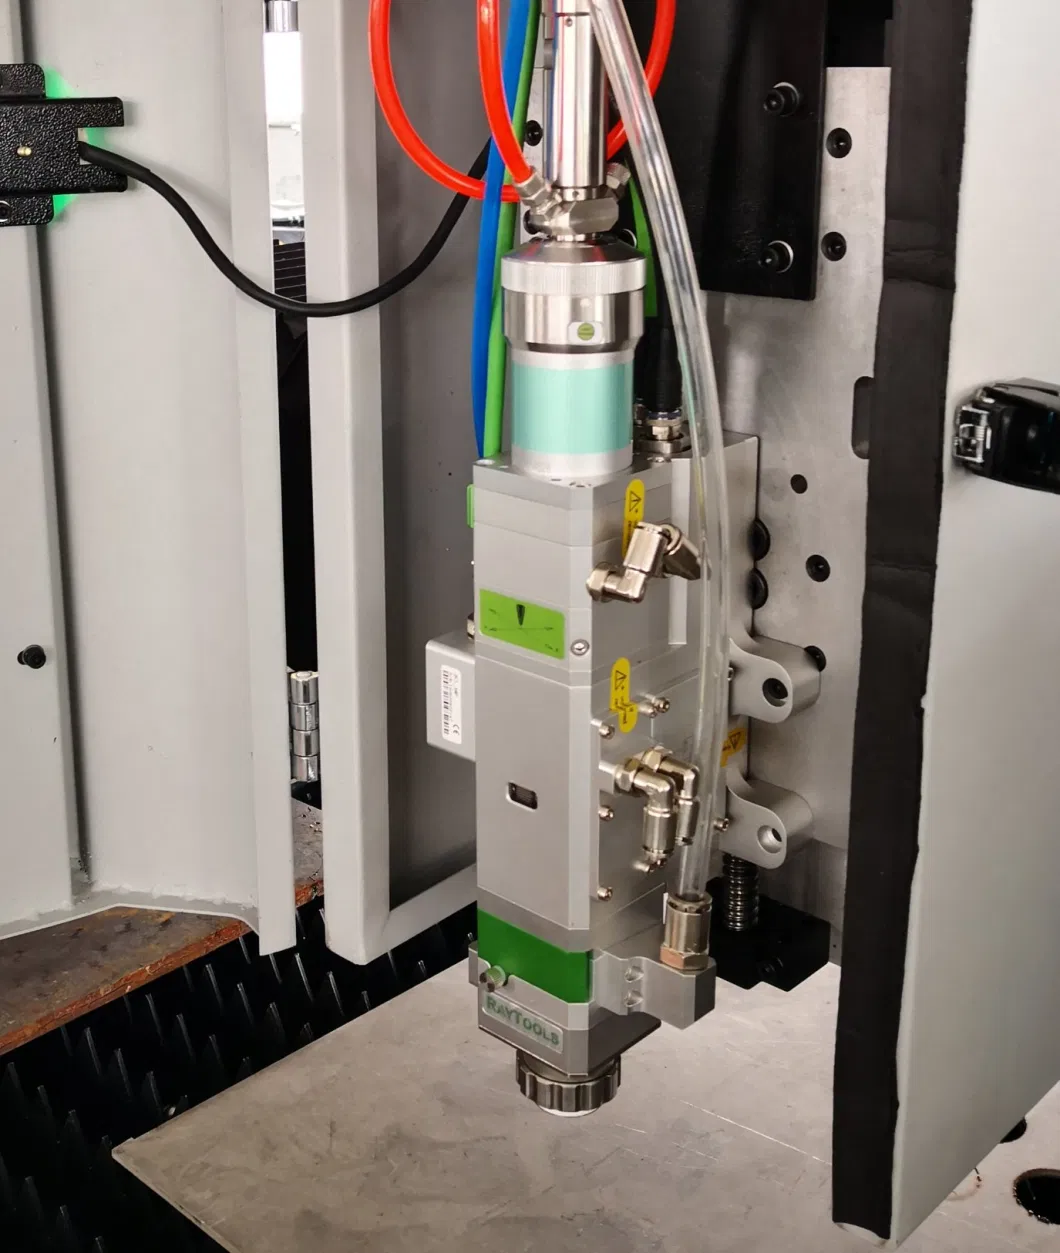 Fiber Laser Equipment Cutter for Cutting Carbon Fiber Metal Fiber Laser Cutting Machine Stainless Steel